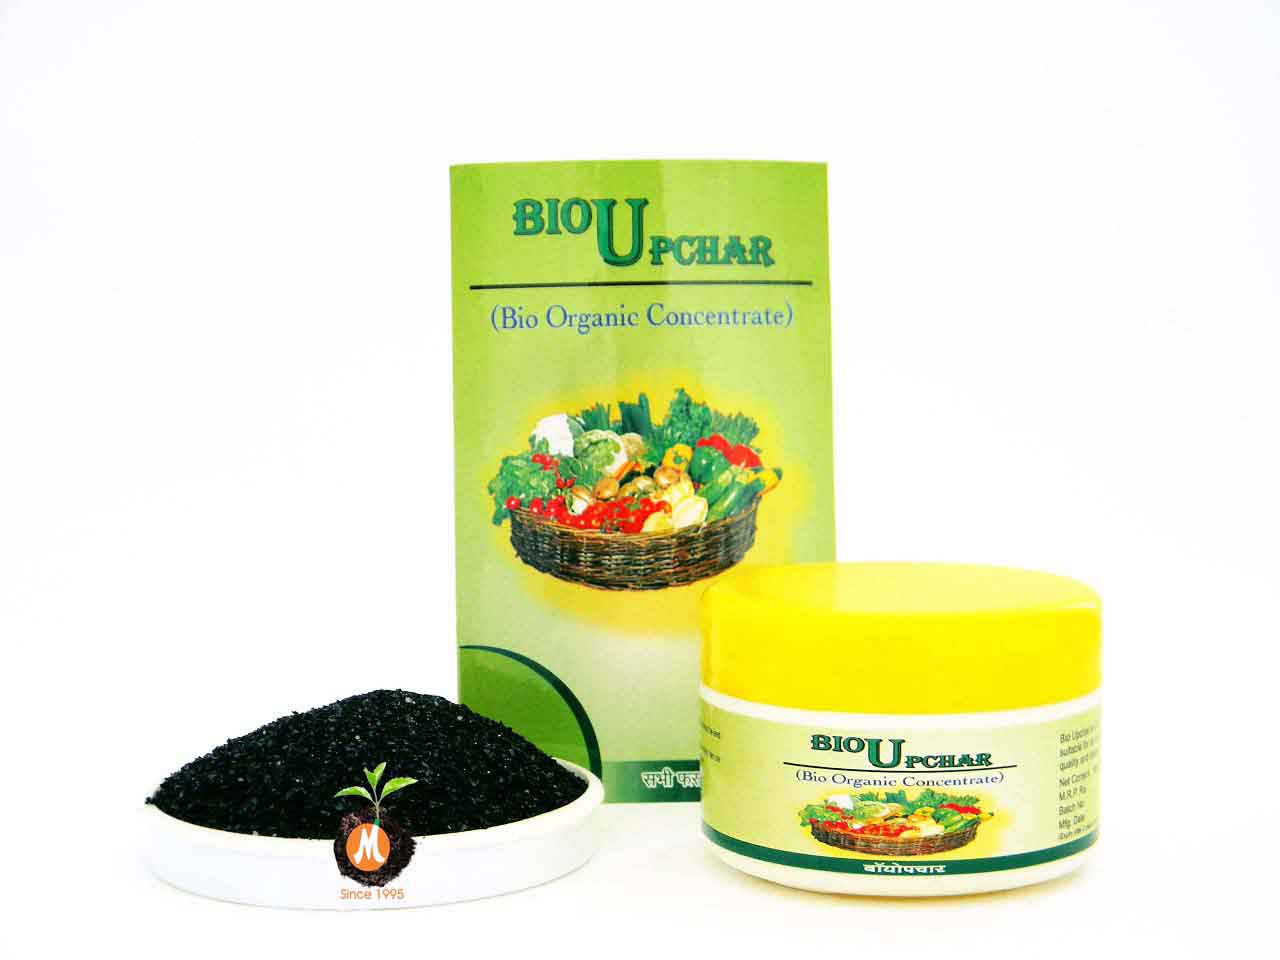 Bio Upchar by New Malwa Agritech Corporation